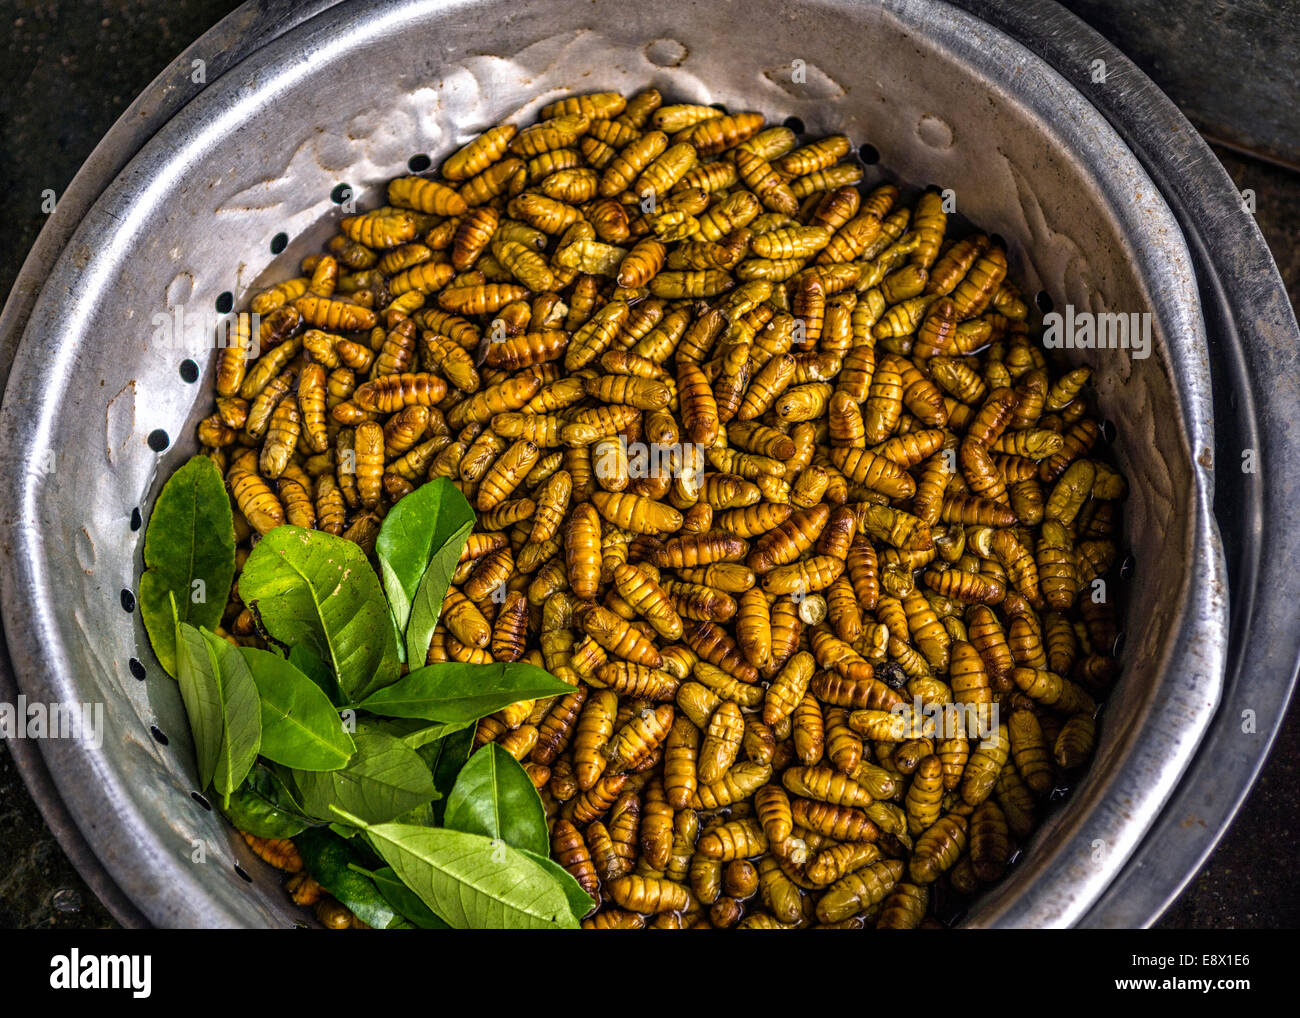 Il Vietnam Sa Pa: vasca riempita con marrone giallo vermi sul mercato. Foto Stock